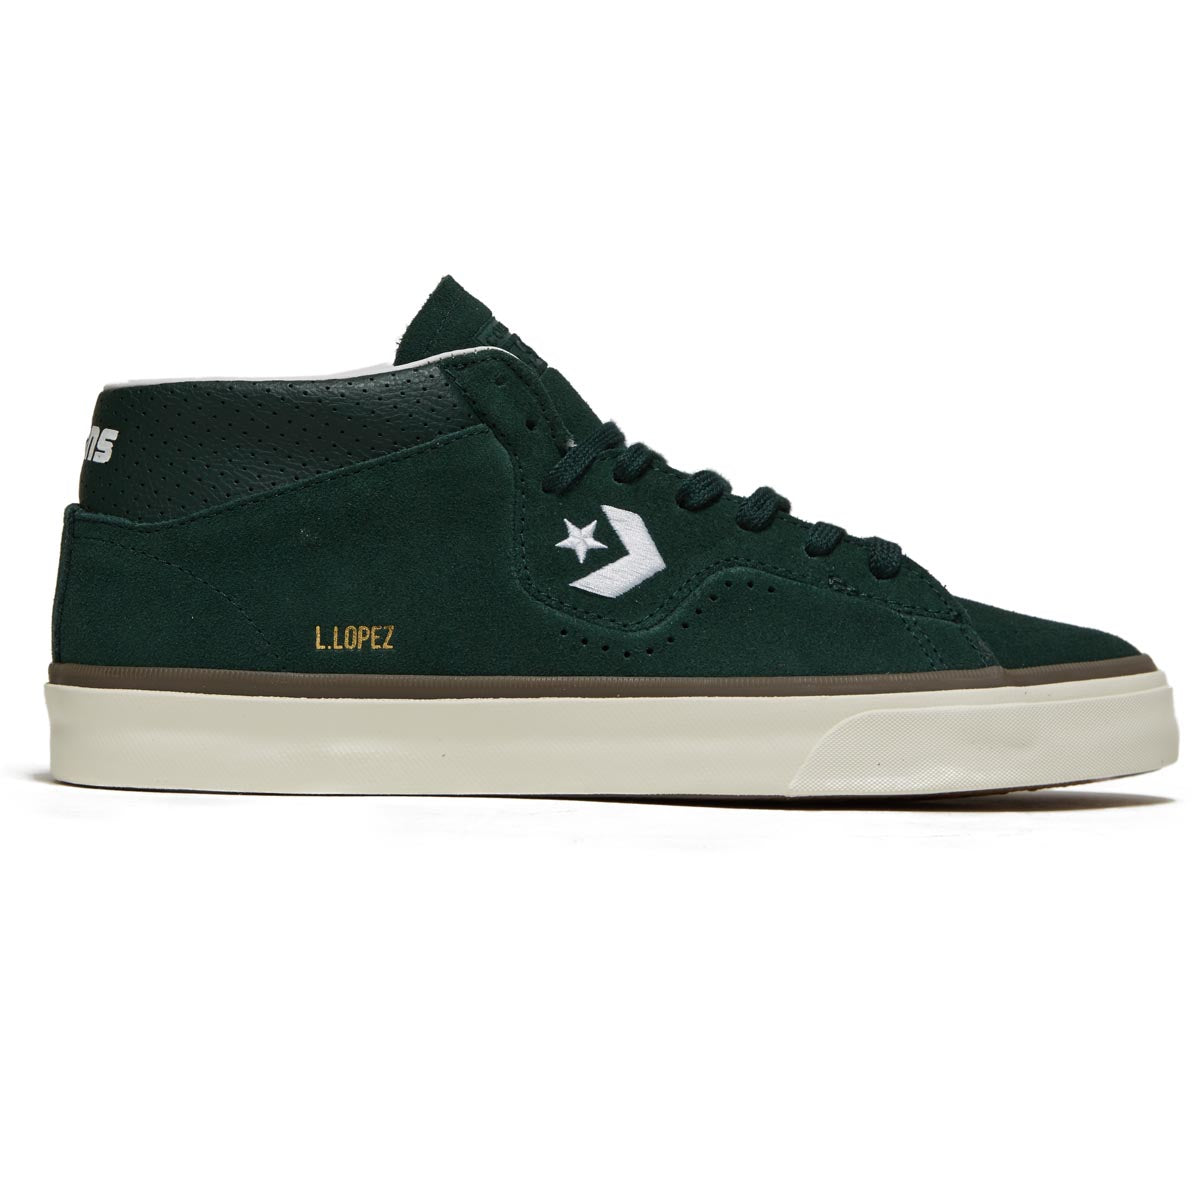 Converse Louie Lopez Pro Mid Shoes - Deep Emerald/White/Egret image 1